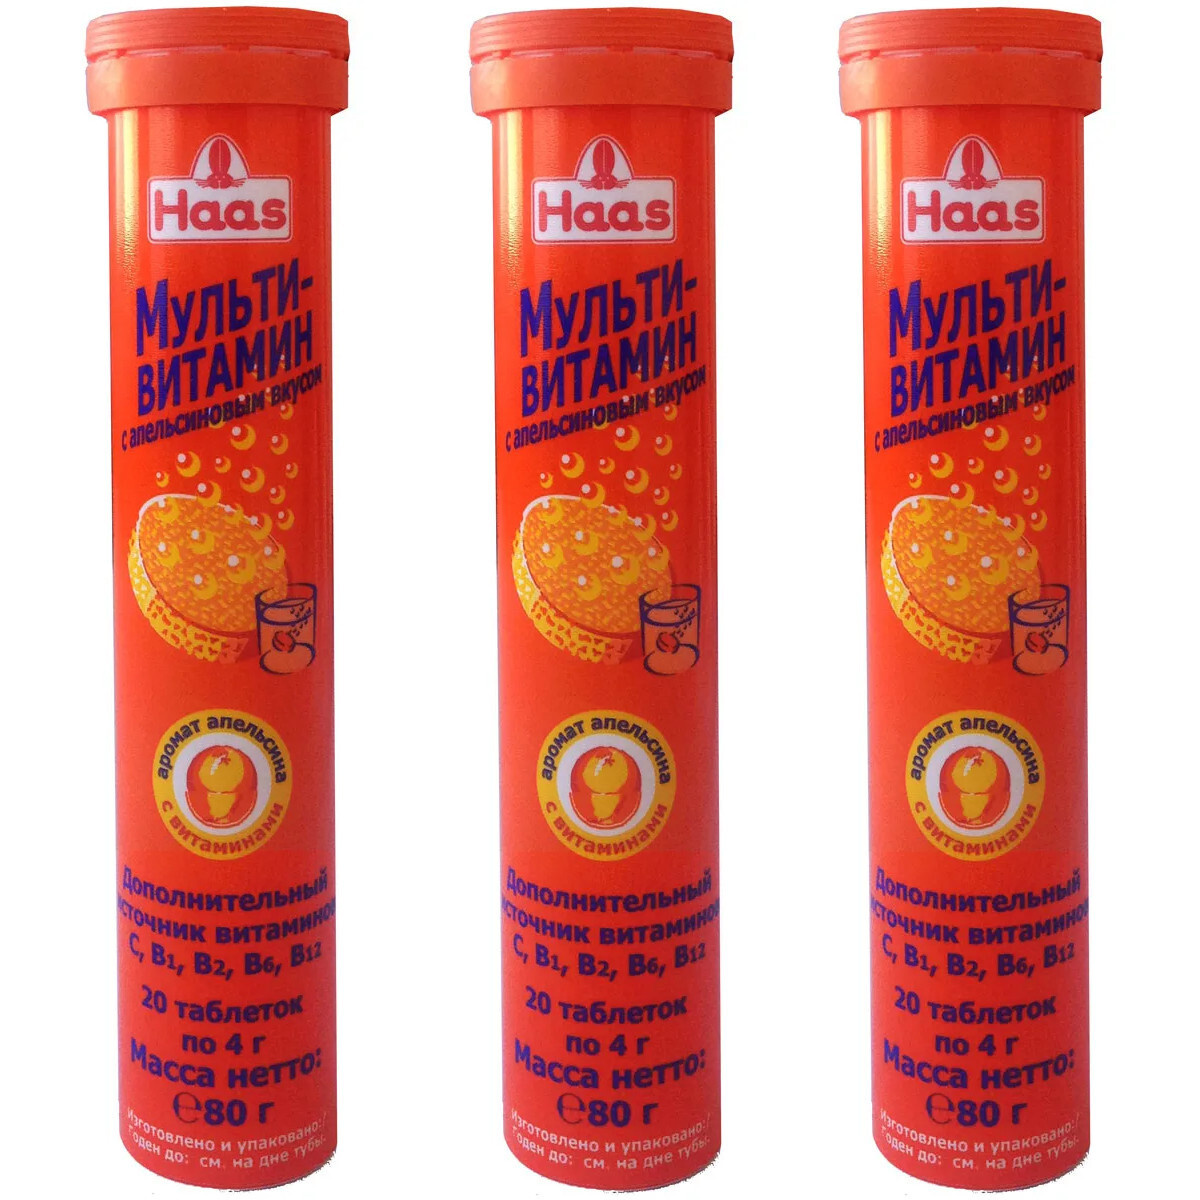 Можно ли пить шипучий витамин с. Мультивитамин с апельсиновым вкусом 20 шипучих. Haas мультивитамин с апельсиновым вкусом 80г. Мультивитамин Haas шипучий. Мультивитамины шипучие Haas.